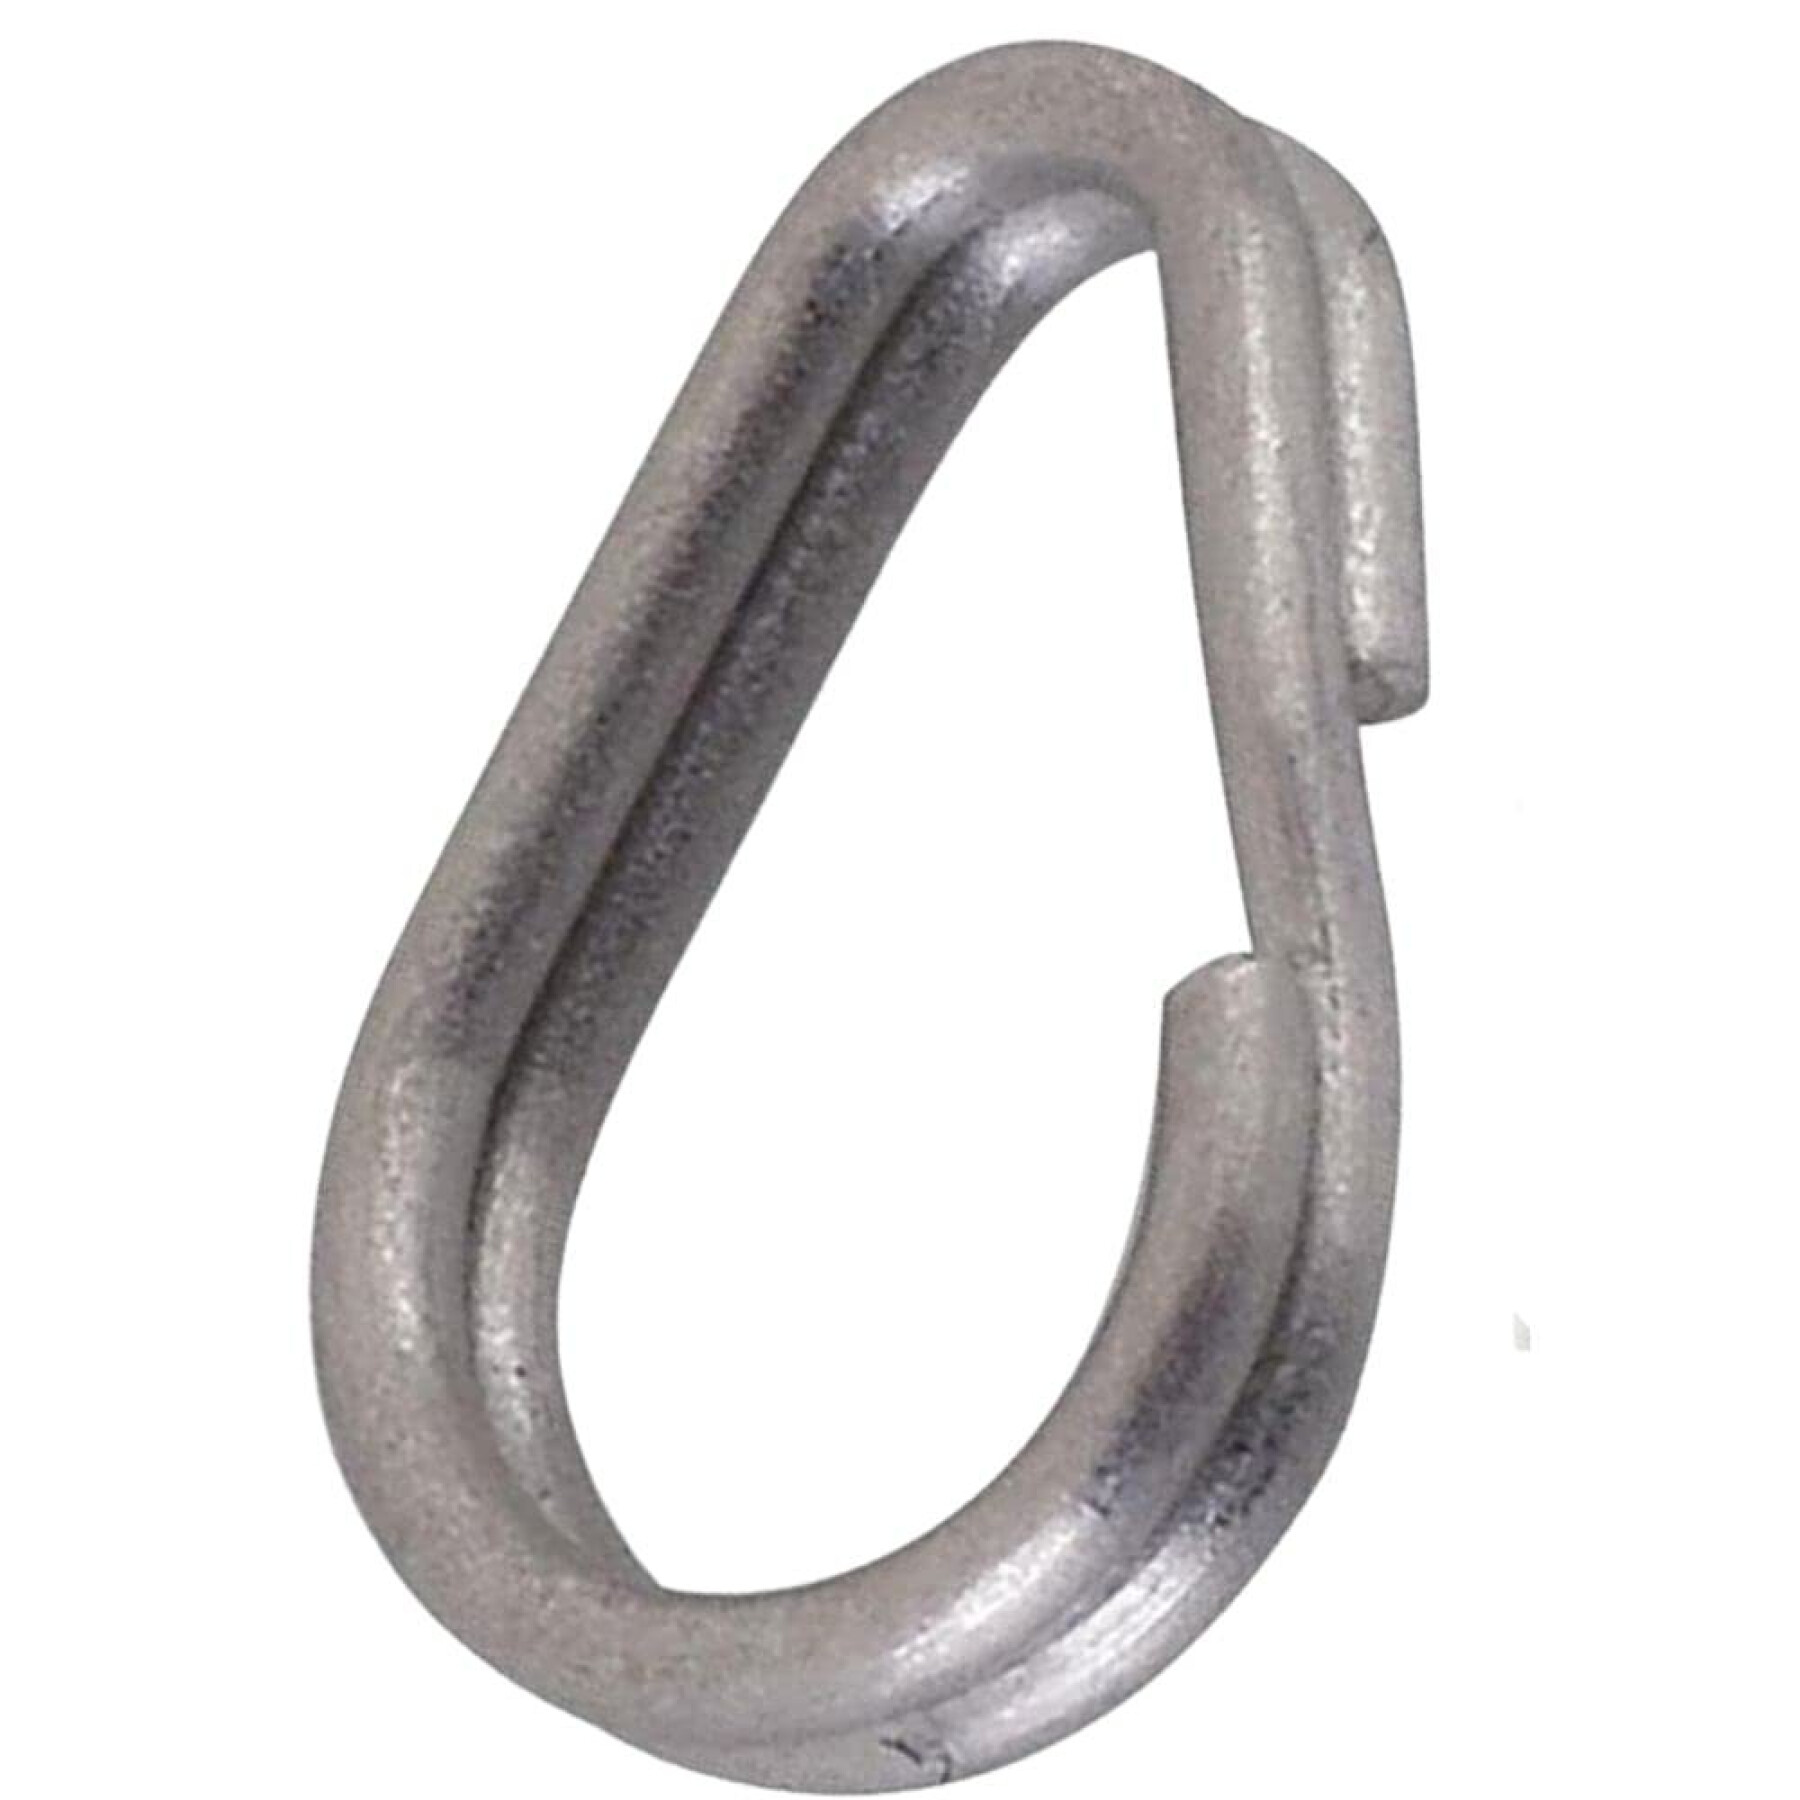 Broken rings Decoy R10 3 75lb (x12)